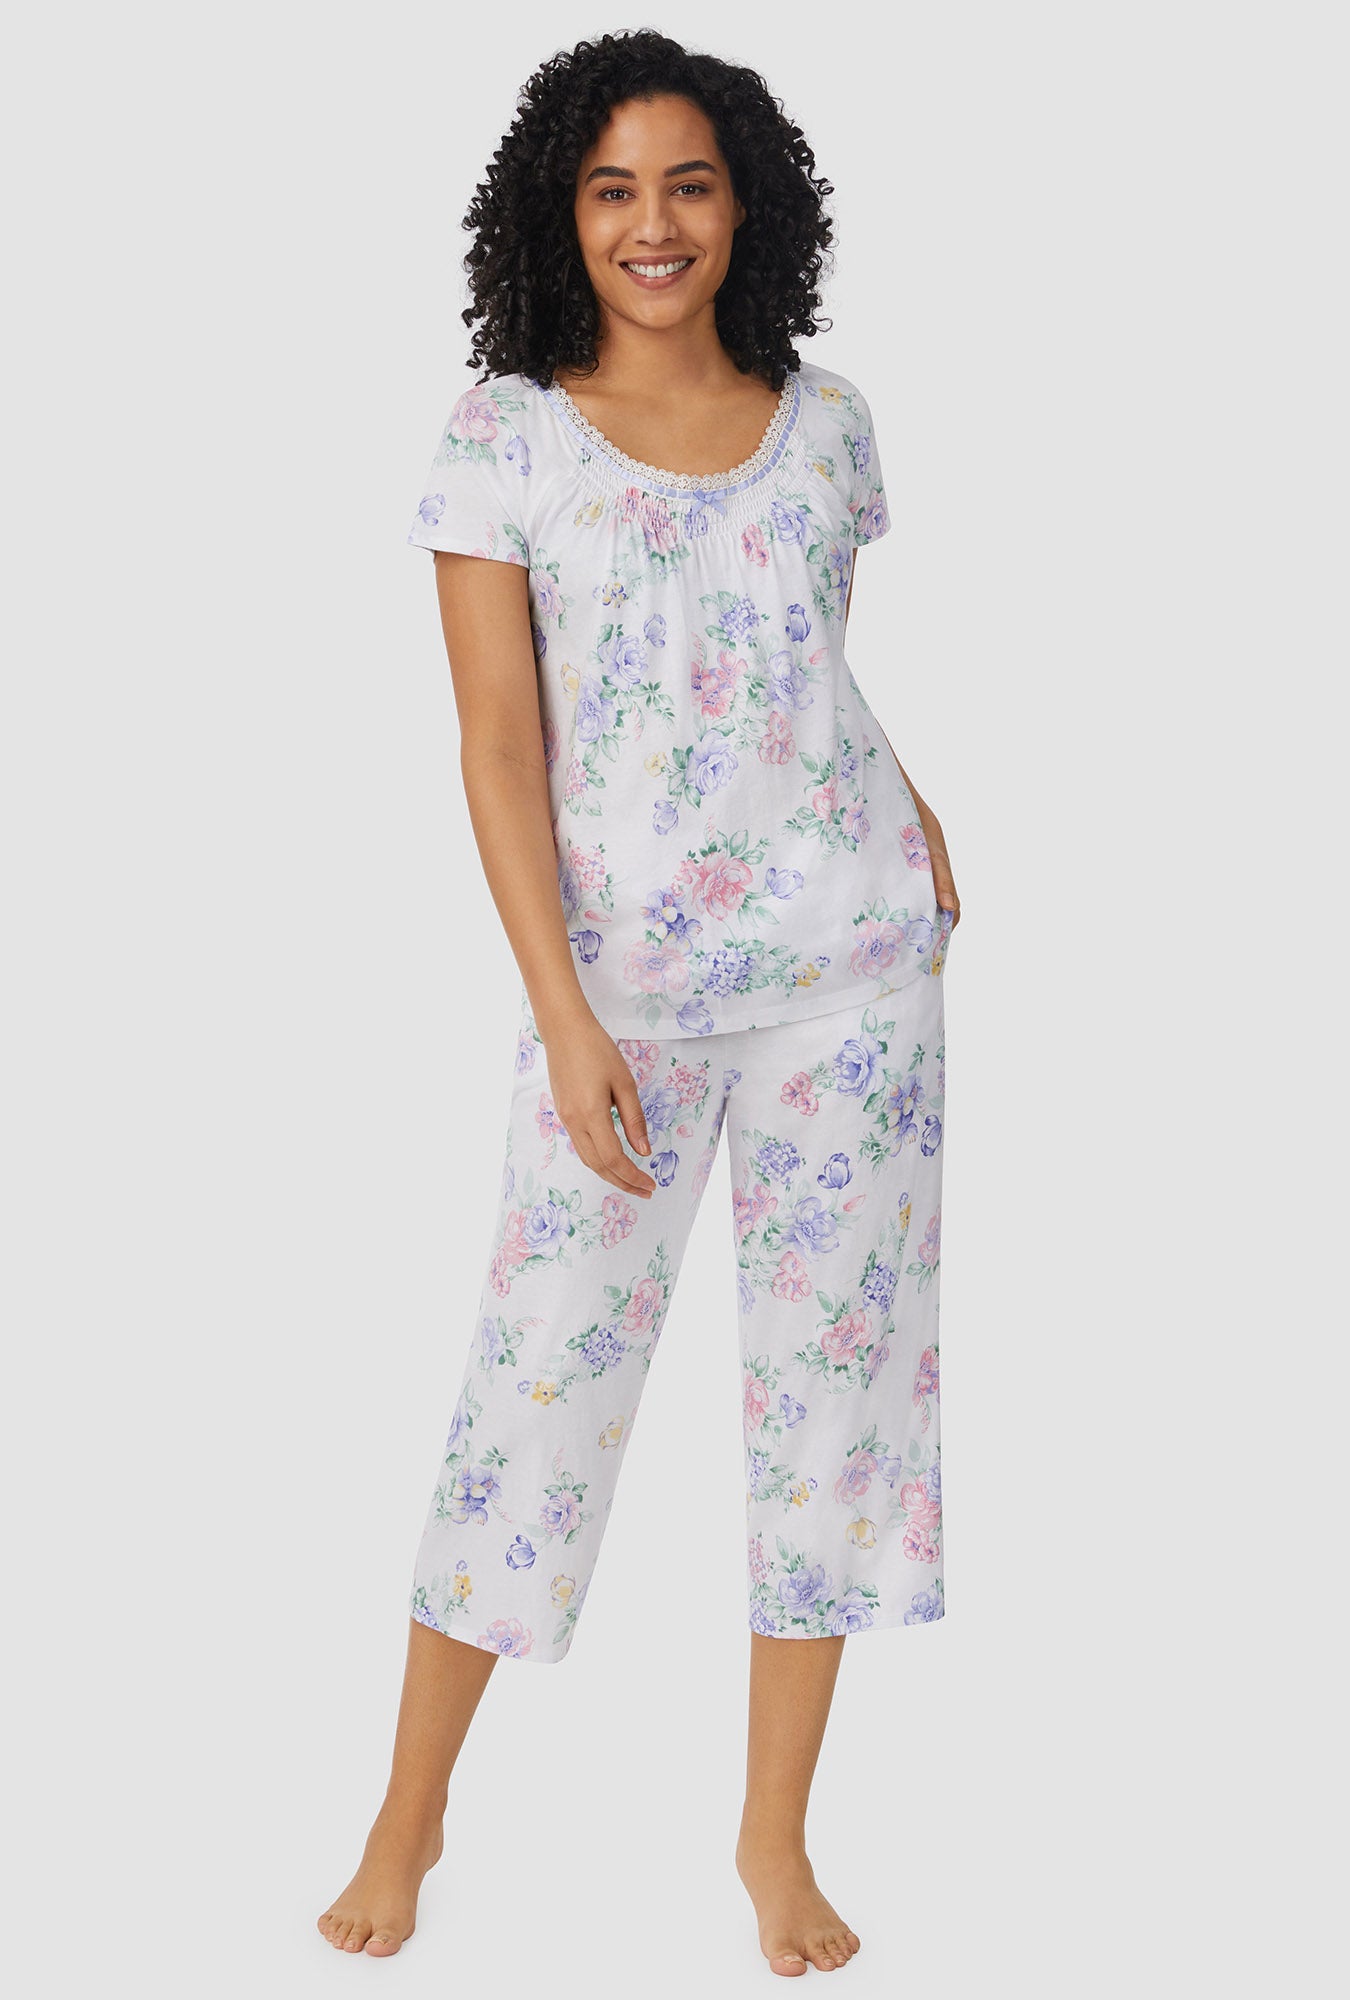 Summer Shells Capri Pajamas - Blue LRG in Women's Cotton Pajamas, Pajamas  for Women